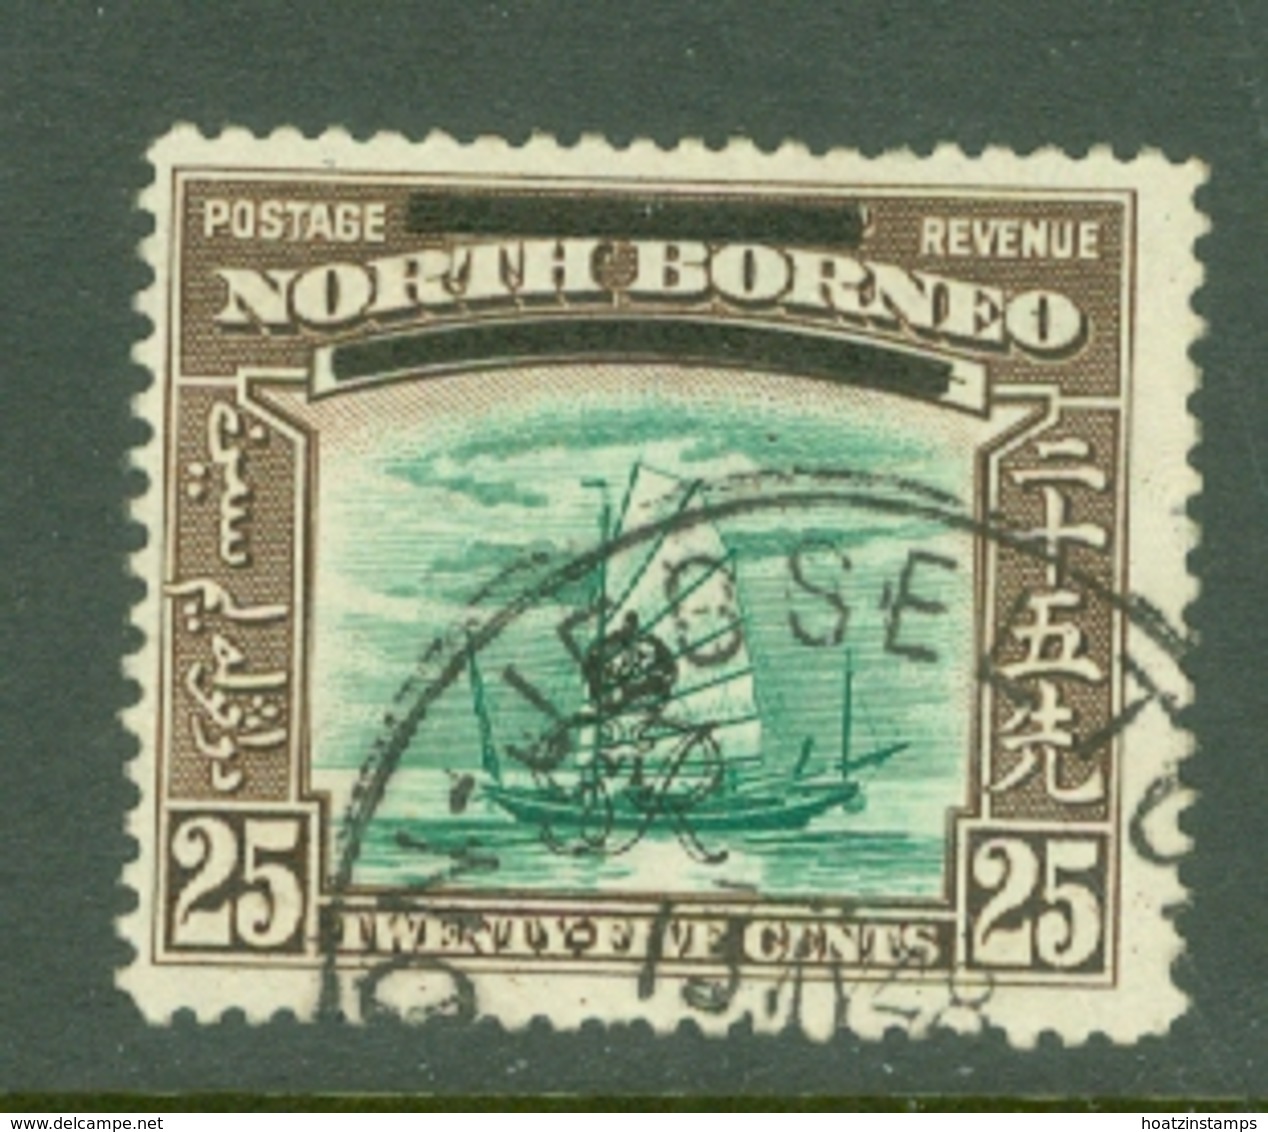 North Borneo: 1947   Pictorial 'Obliterating Bars' OVPT    SG345   25c    Used - North Borneo (...-1963)